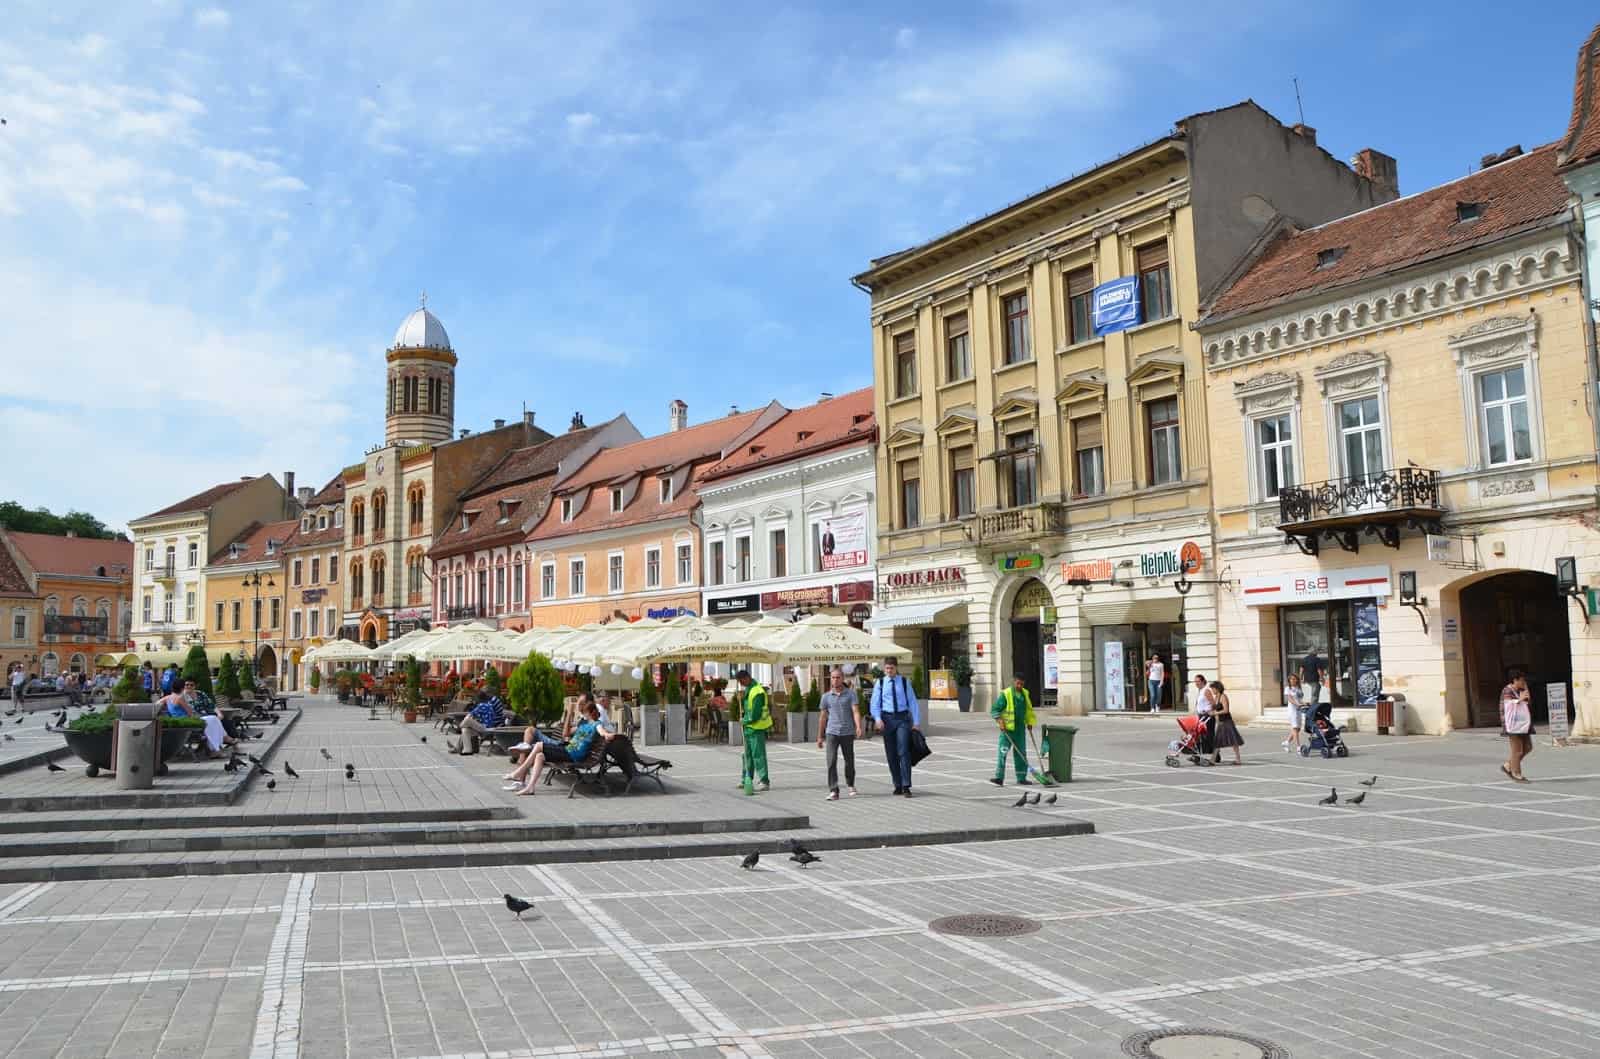 Piața Sfatului in Braşov, Romania